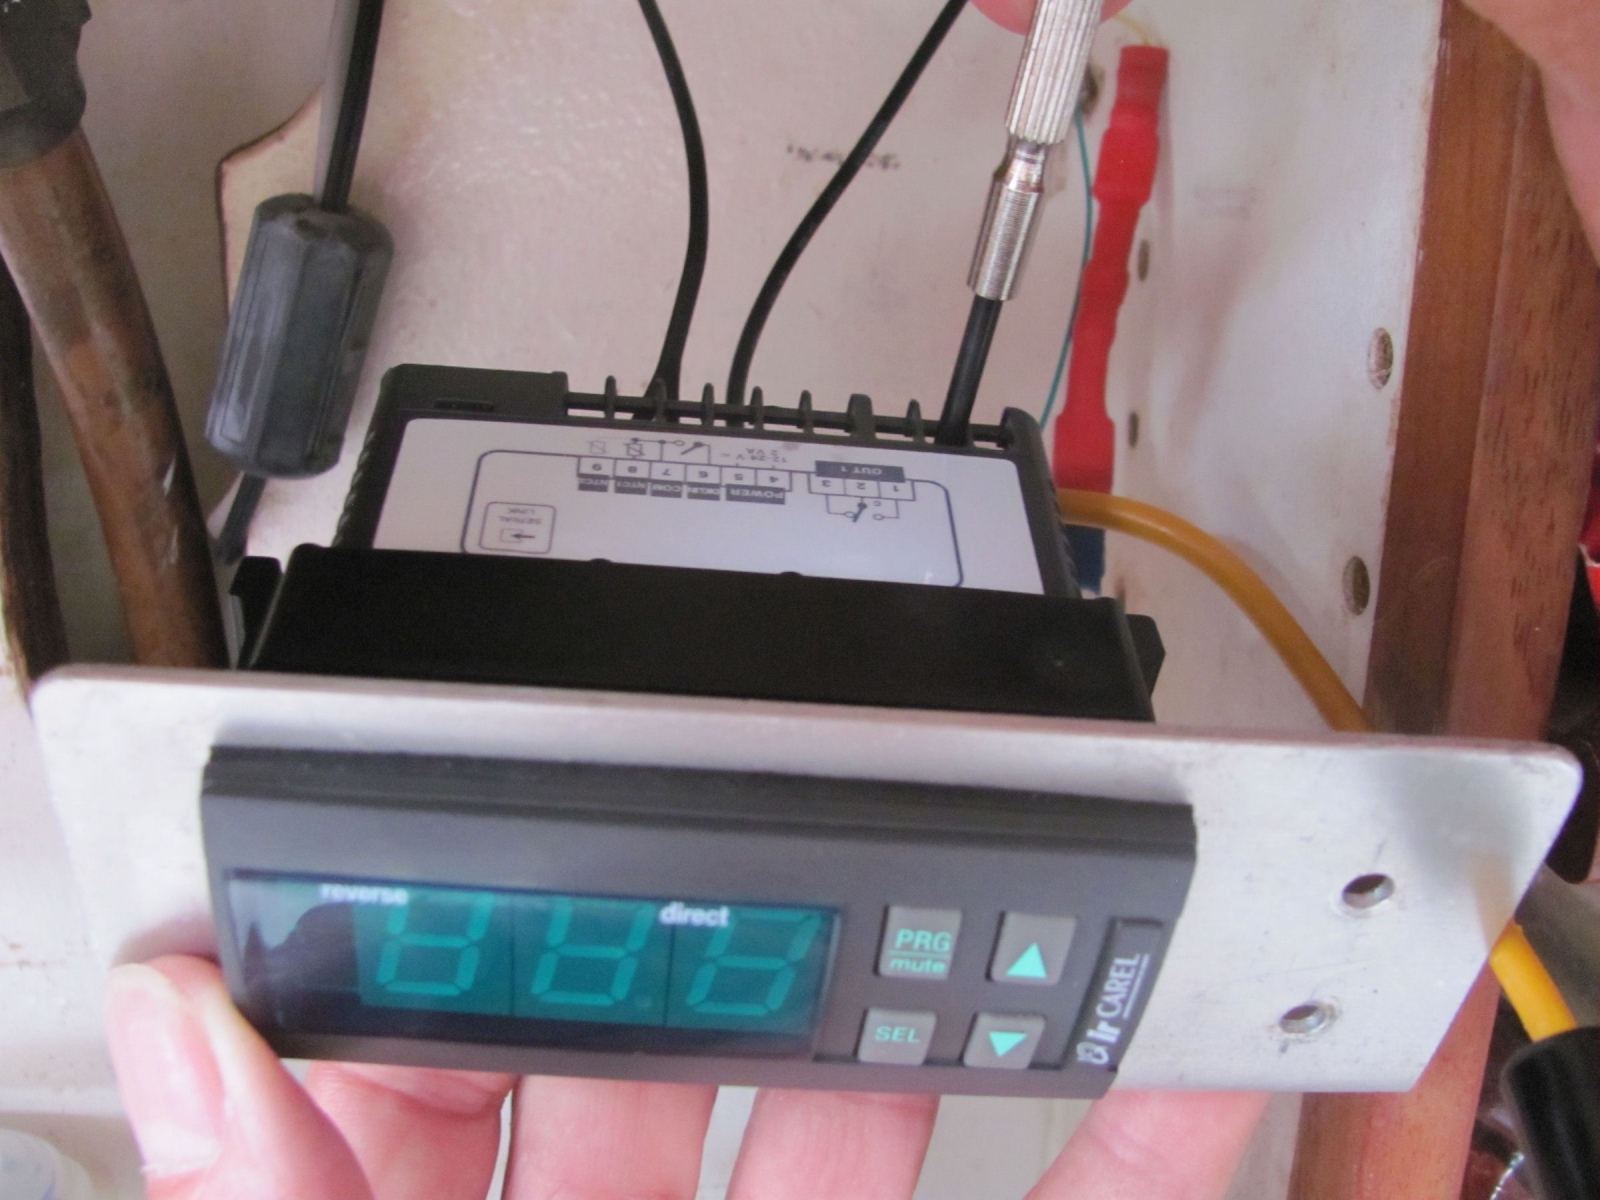 Fridge thermostat connection : r/Appliances